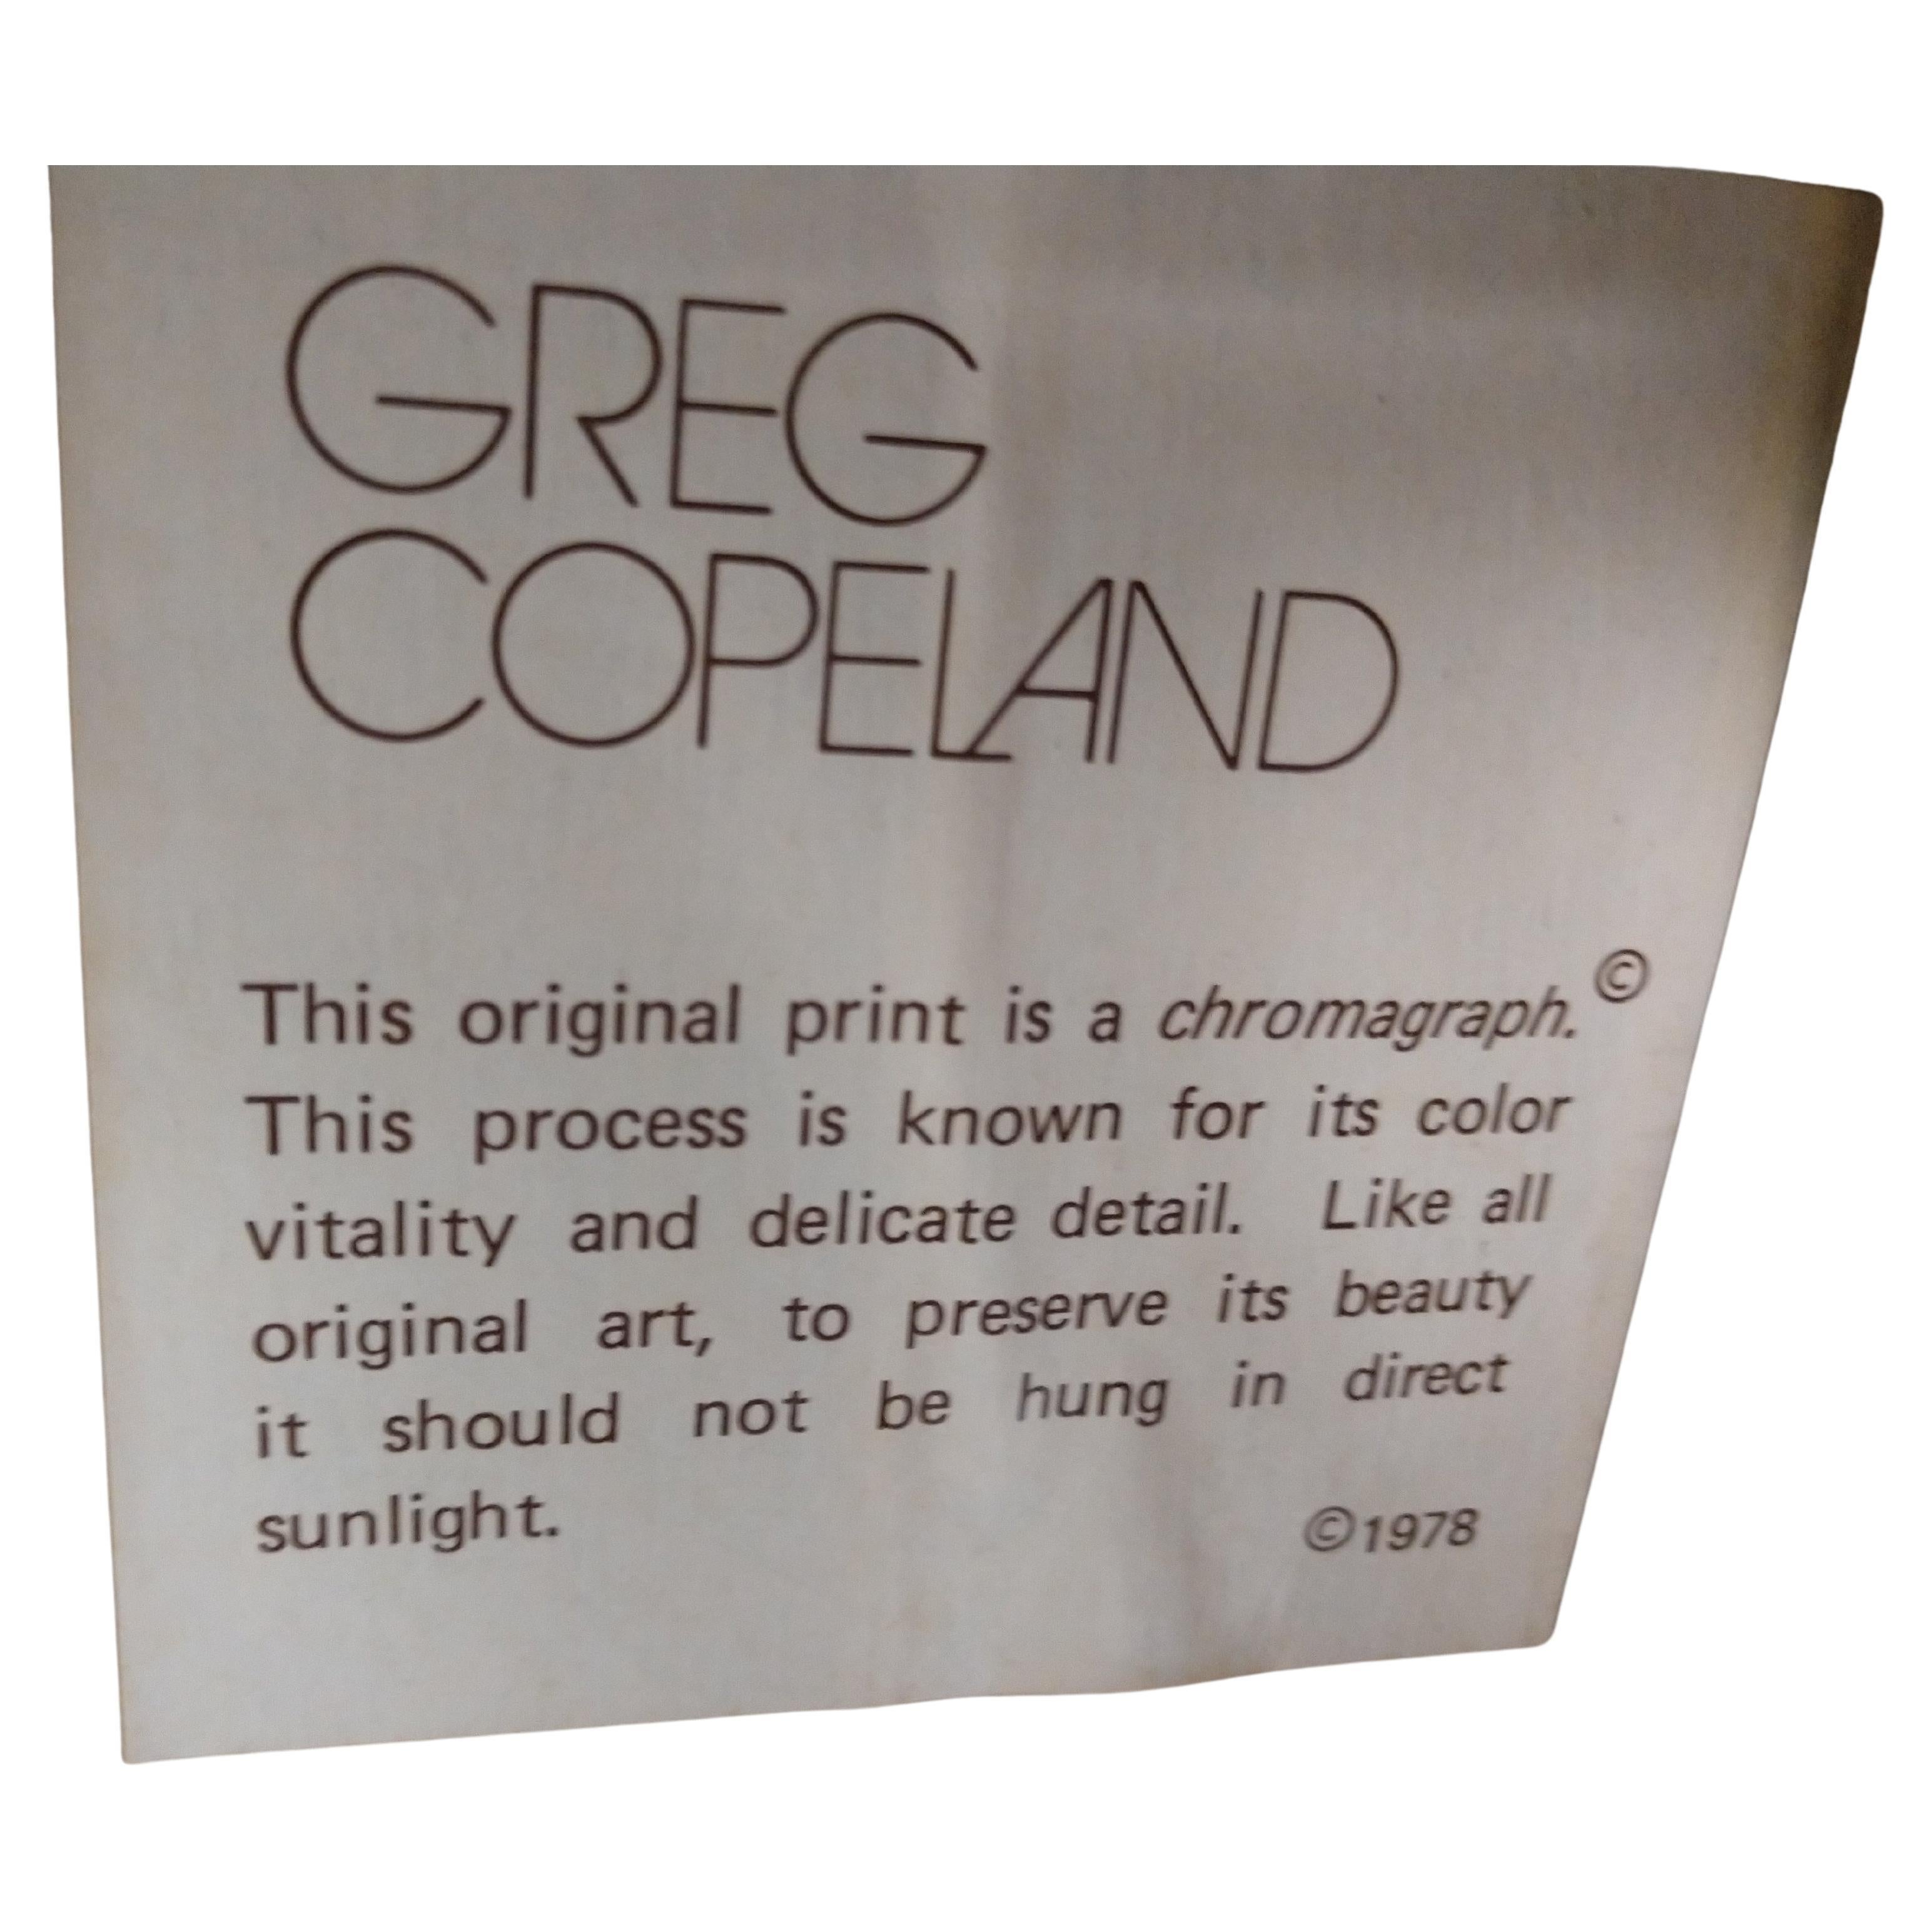 Zwei gerahmte Tafeln mit den Maßen 48,5 x 26,5 für eine Chromolithographie von Greg Copeland, signiert und nummeriert 4/250. Asiatisch inspiriert mit flacher Farbgebung in Gelb- und Brauntönen. Hinter Glas und in ausgezeichnetem Zustand.